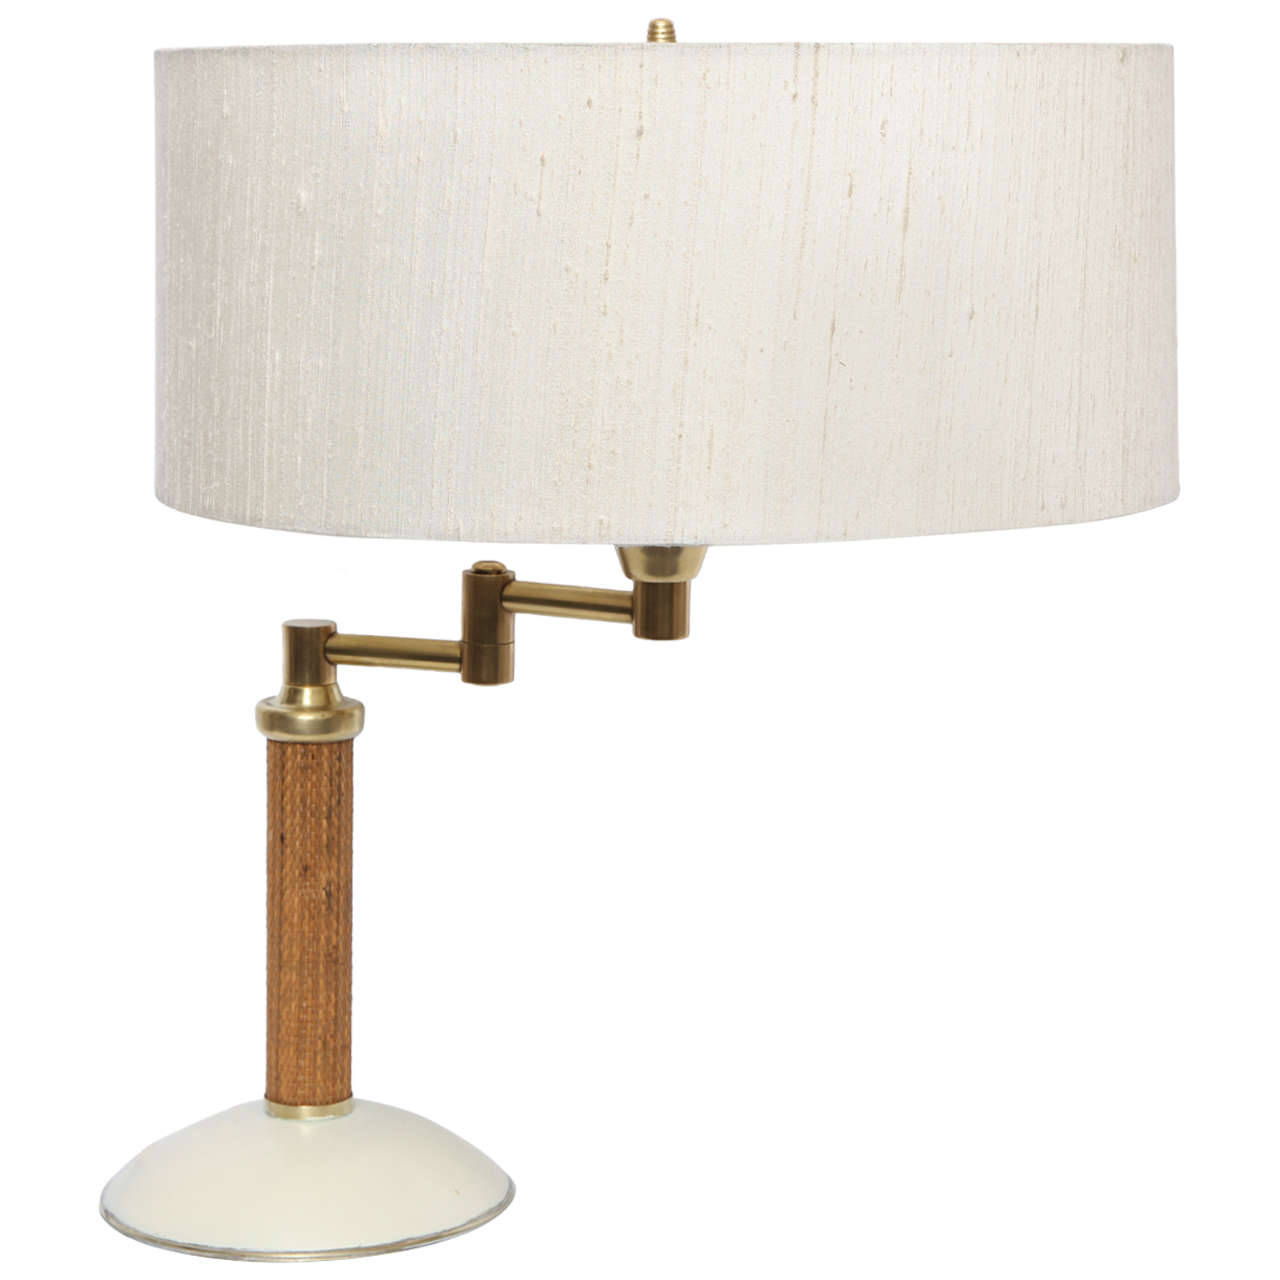  Kurt Versen Table Lamp Articulated American Modernist 1930's